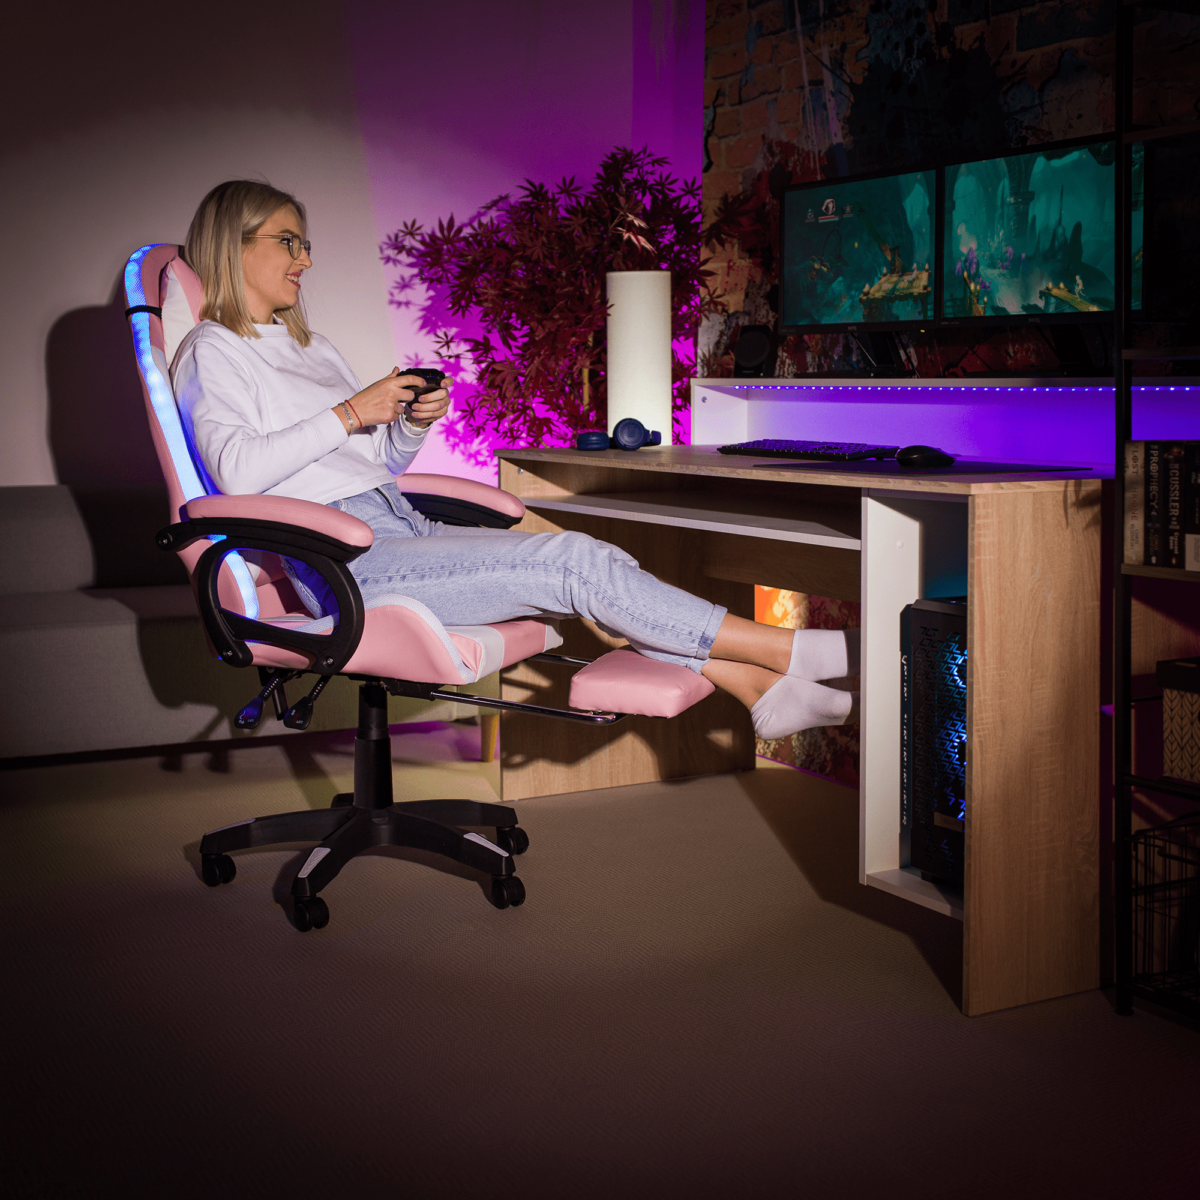 Irodai/gamer szék RGB LED világítással, rózsaszín/fehér, JOVELA